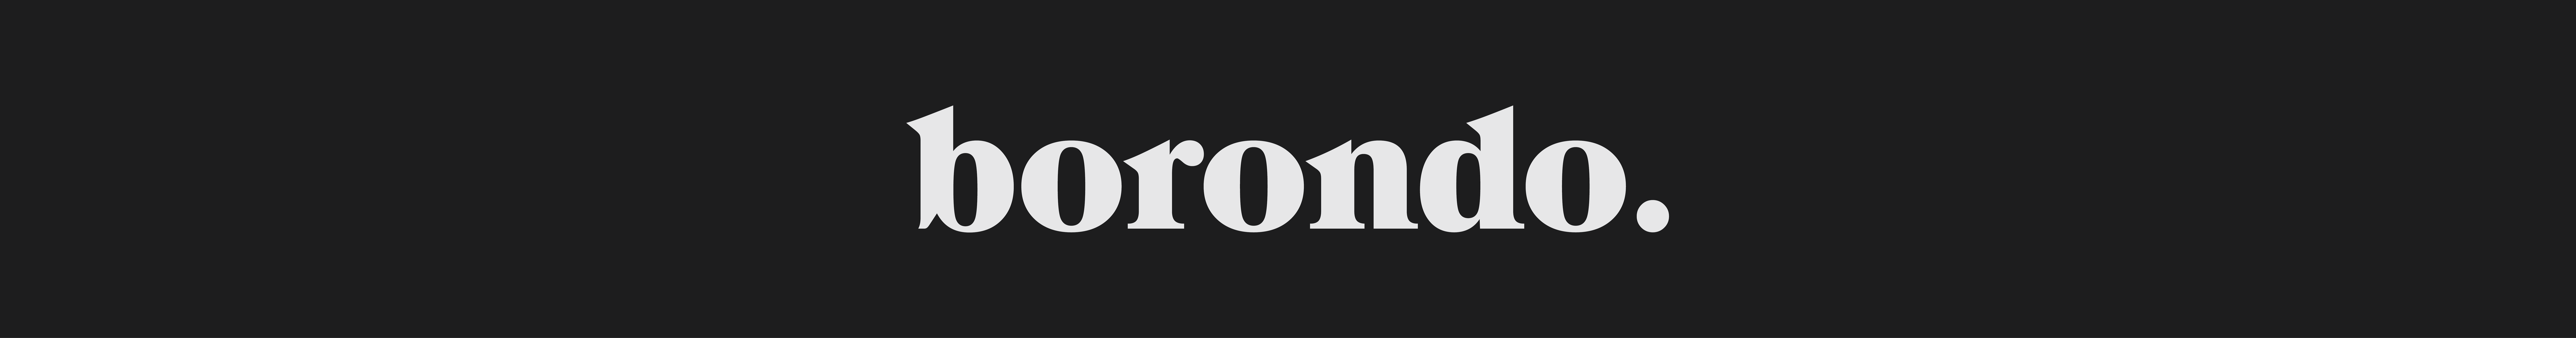 Borondo. Studio's profile banner